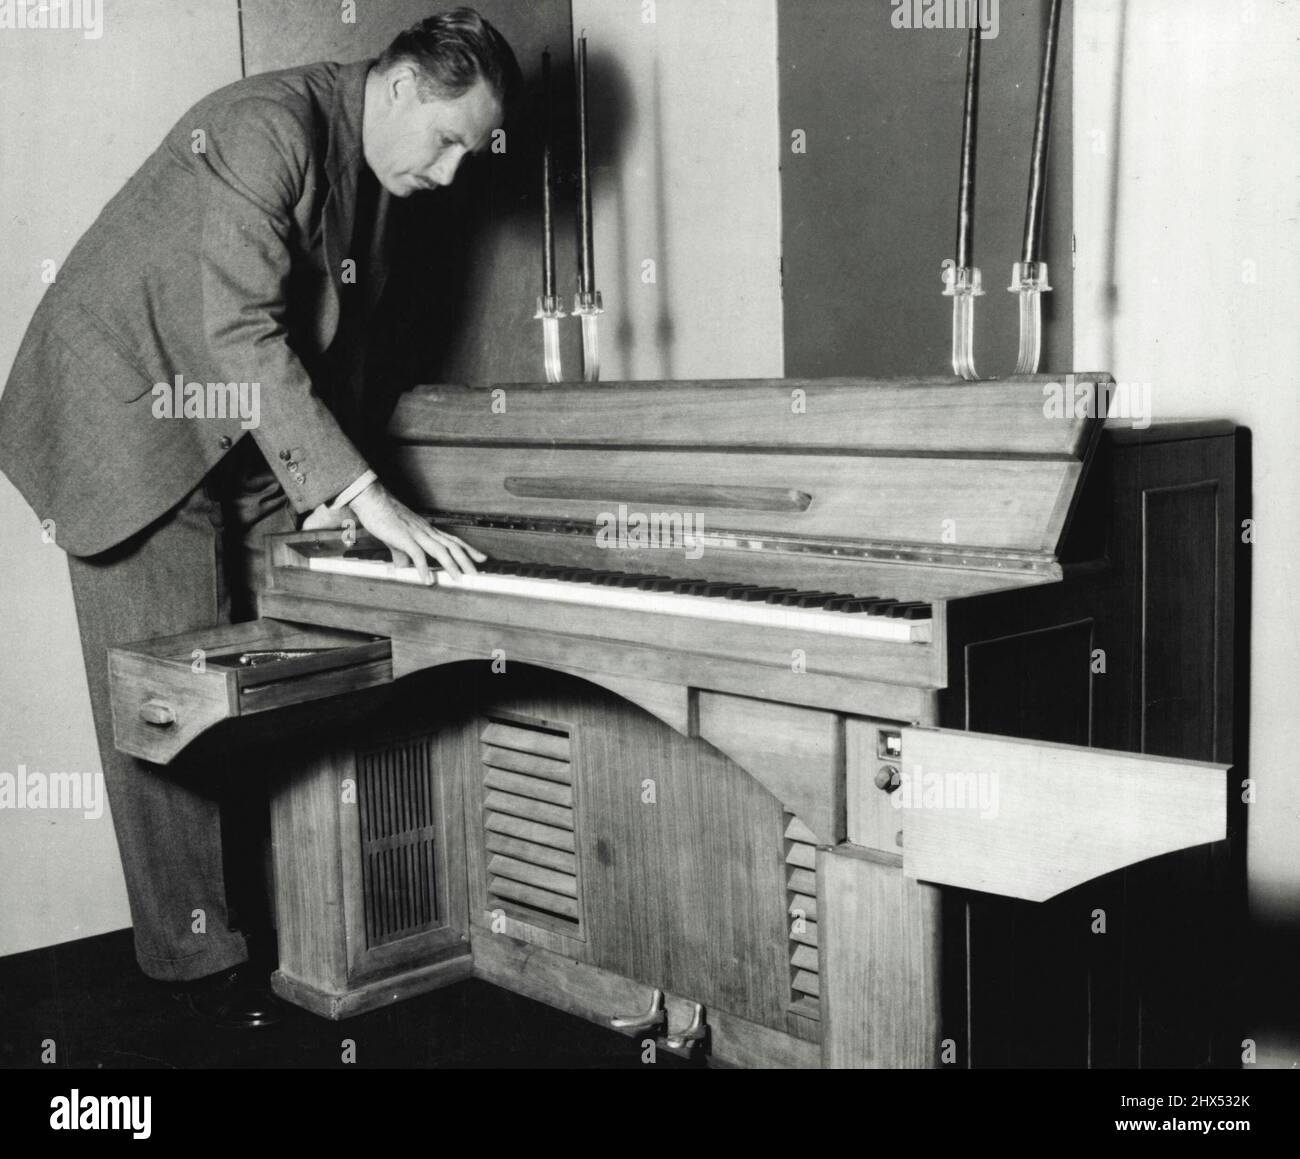 Le Dynaatone - il possède 88 notes complètes de grand piano. Le clavier est  de hauteur standard. Le tiroir de gauche abrite des platines  phonographiques. Sur la droite, les haut-parleurs radio sont